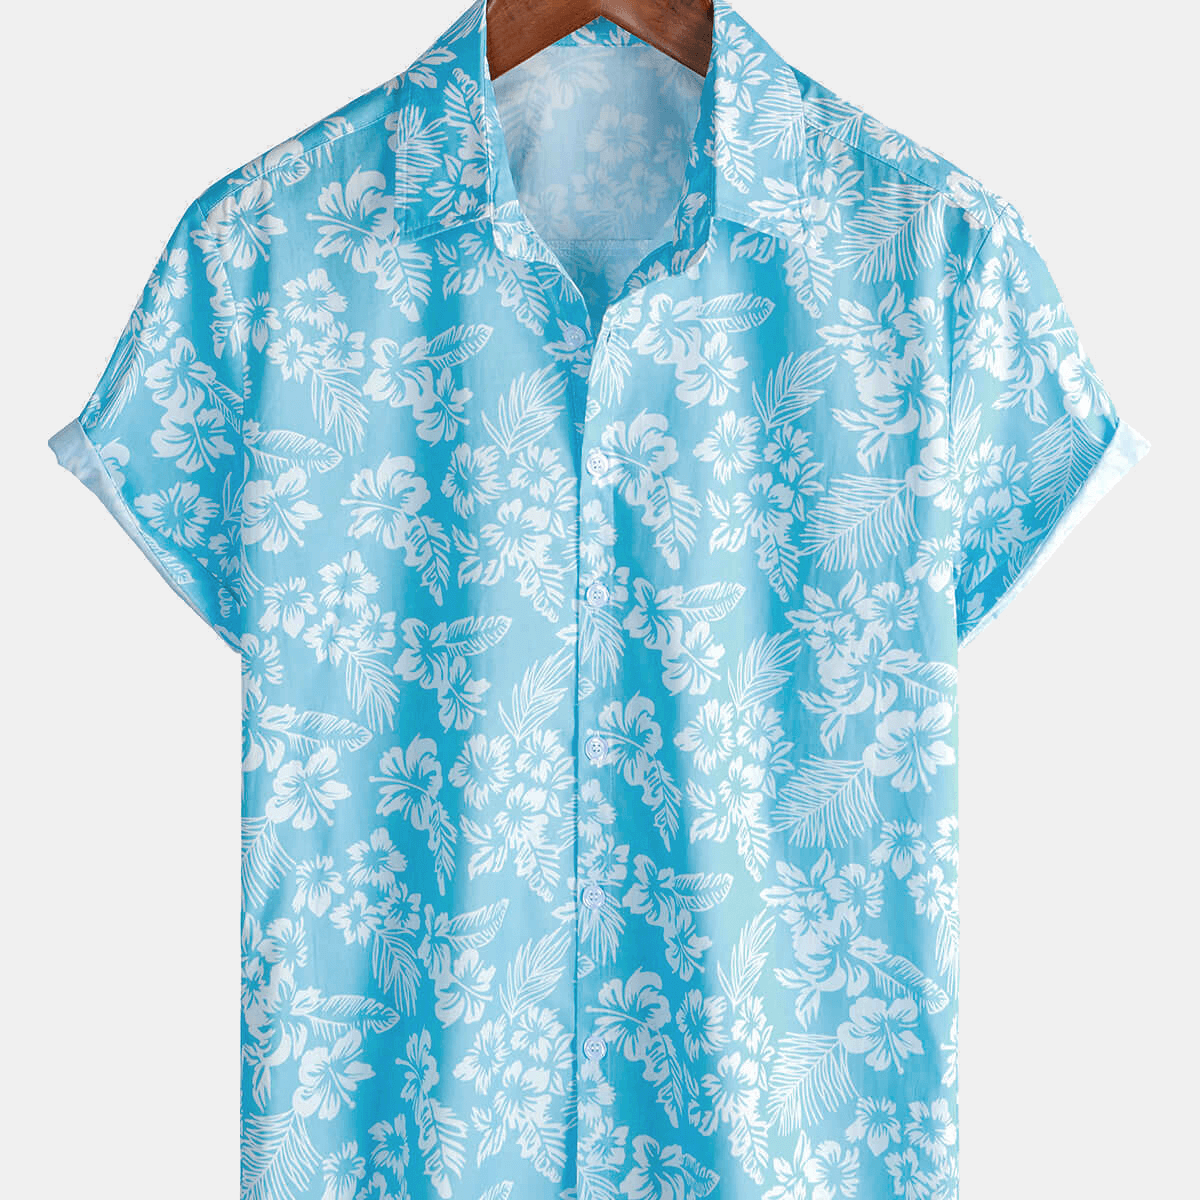 Men's Holiday Blue Hawaiian Floral Button Up Short Sleeve Shirt